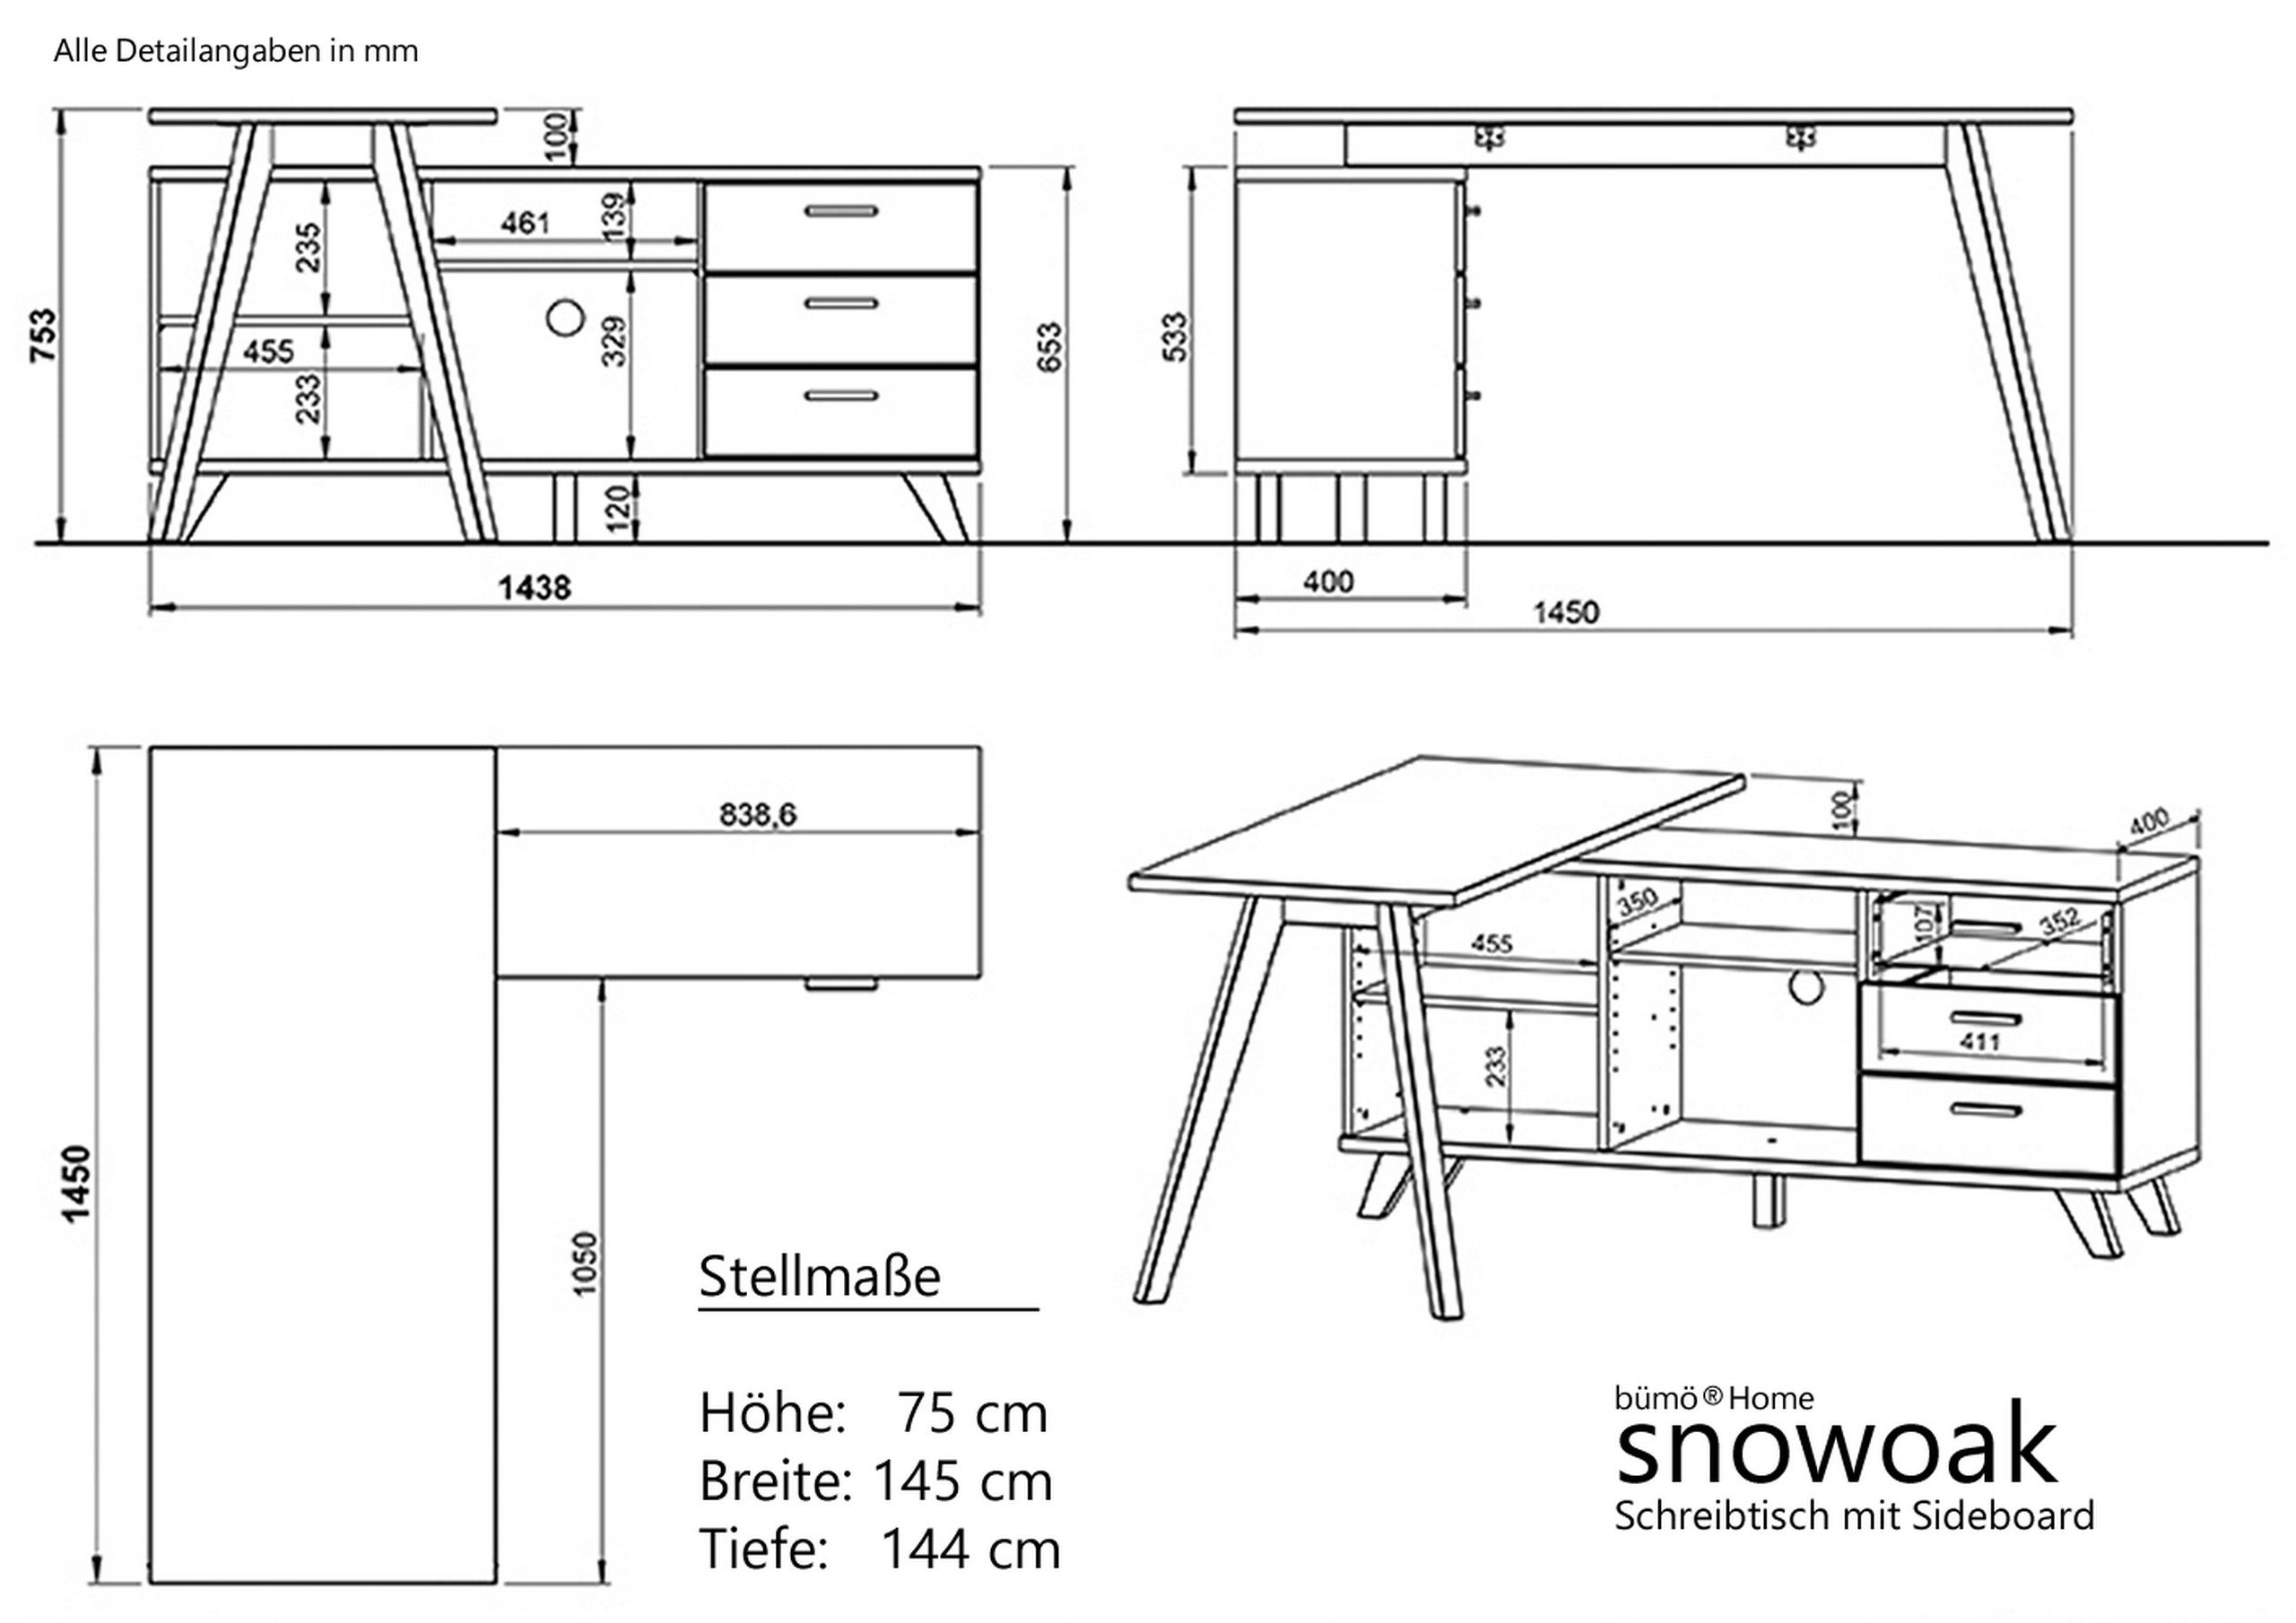 snowoak, in Weiß/Eiche Schreibtisch integriertem Sideboard mit Bürotisch bümö